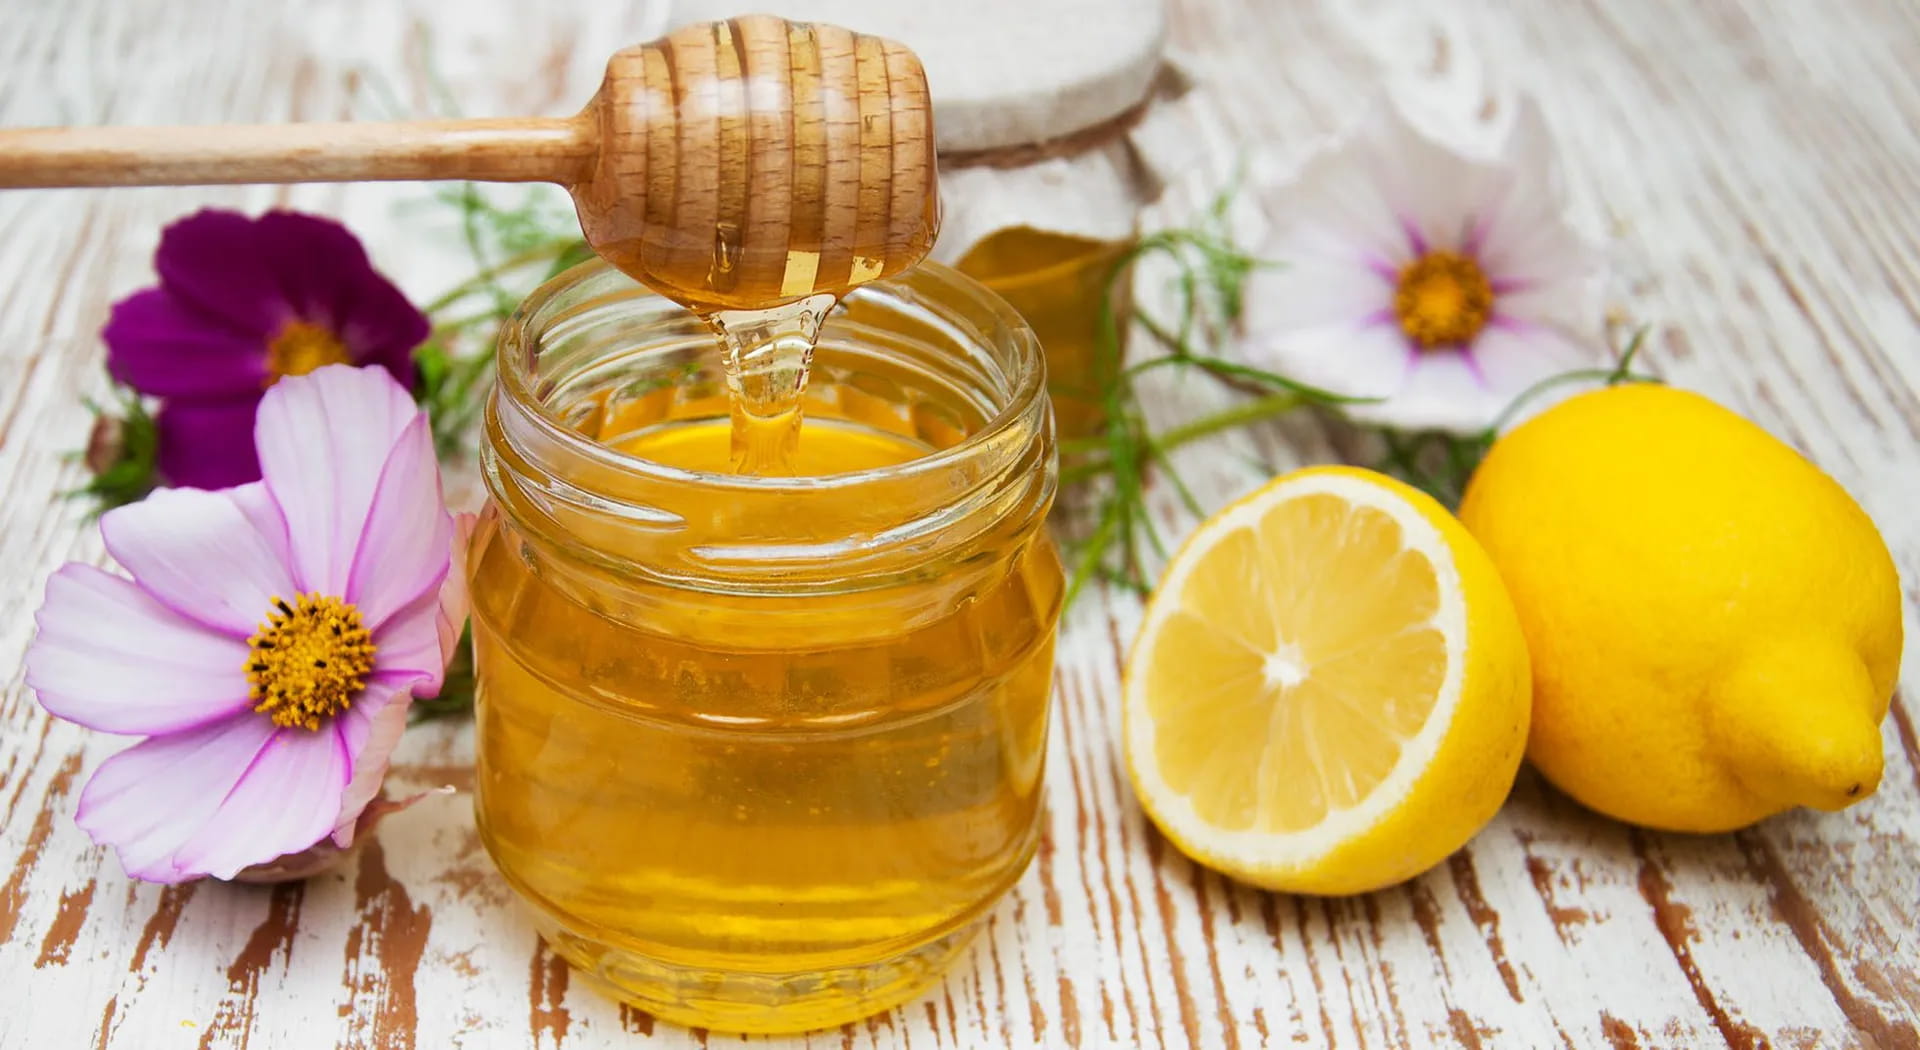 Proprietà del miele: usi, benefici e consigli di cucina